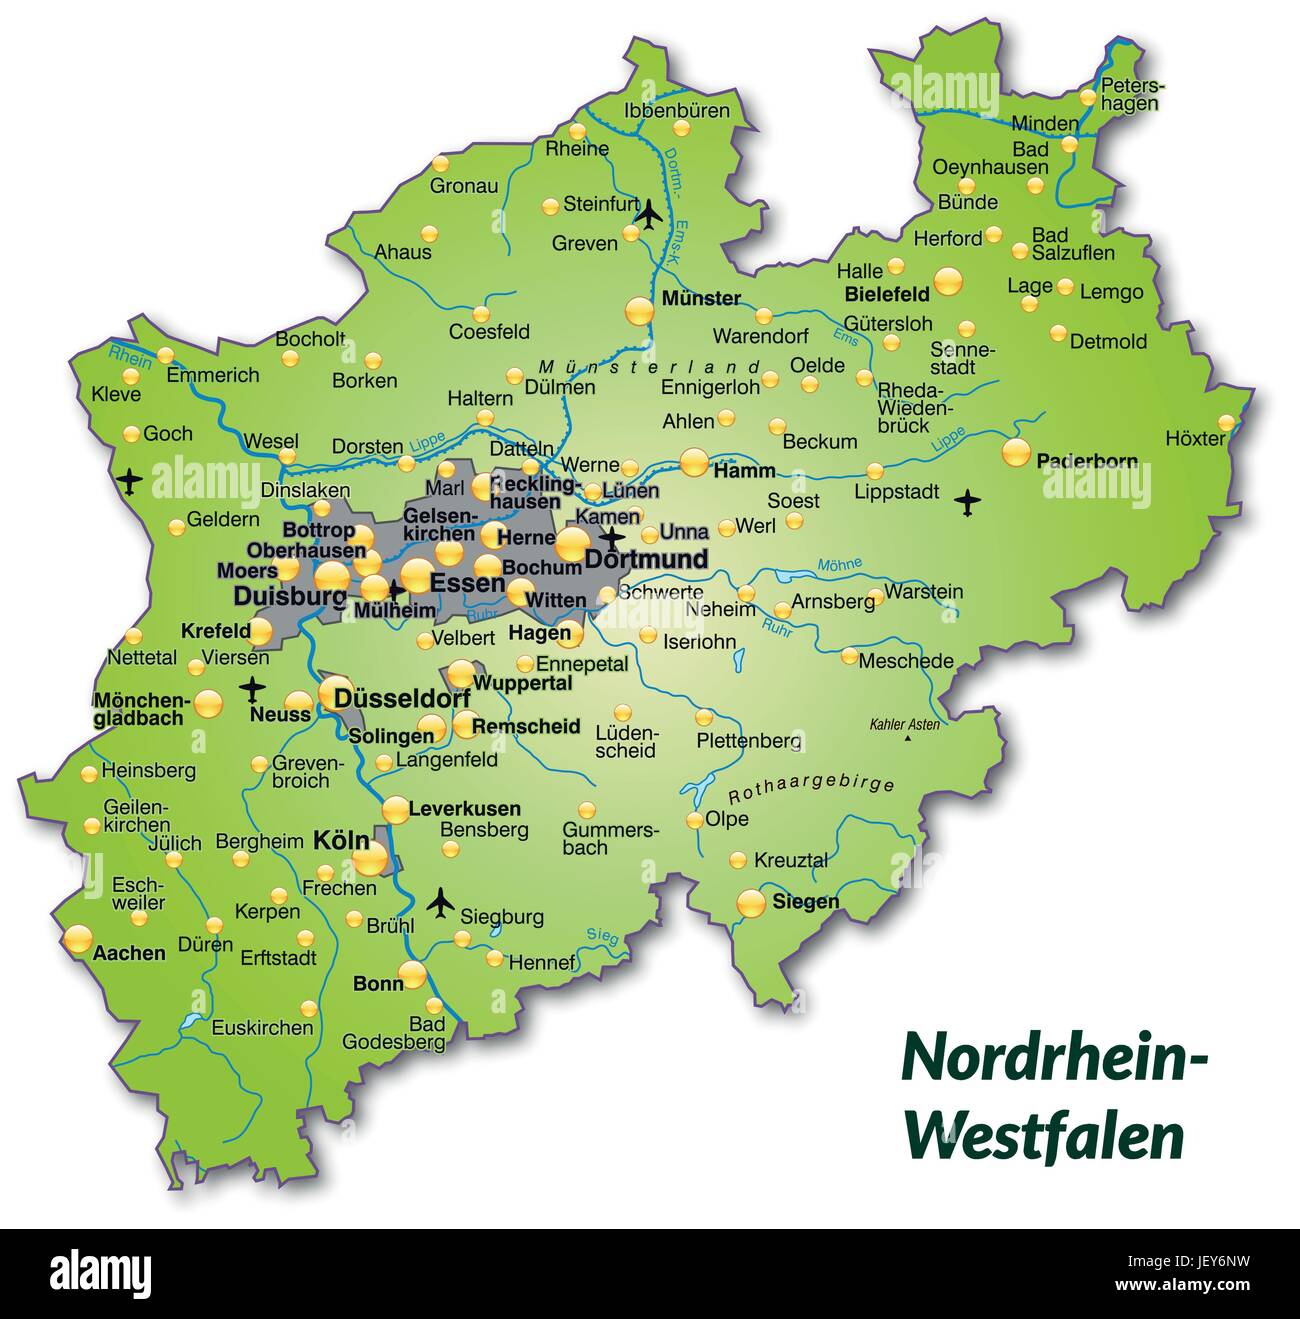 Karte von Nordrhein-Westfalen als eine Übersichtskarte in grün Stock Vektor